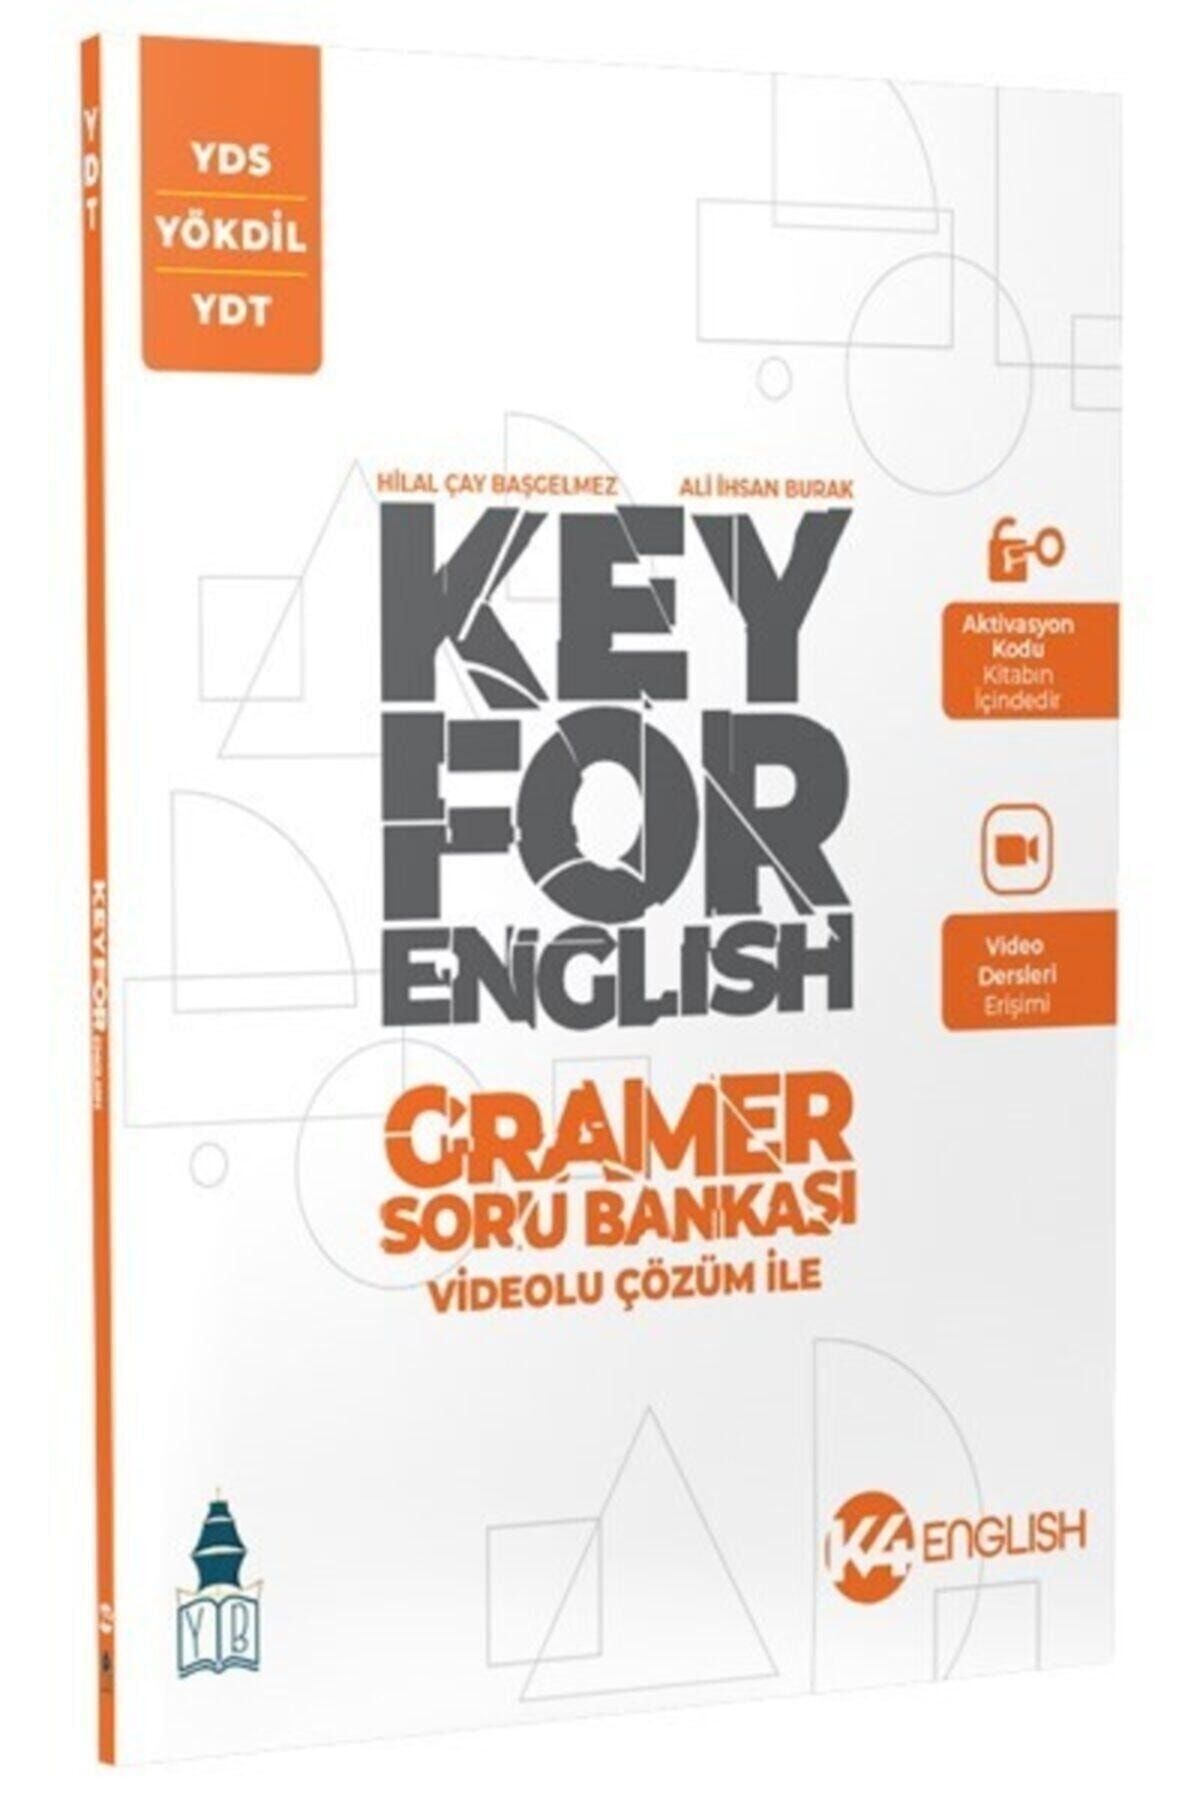 Tonguç Yayınları Yds Yökdil Ydt Key For English Gramer Soru Bankası K4 Yayınları